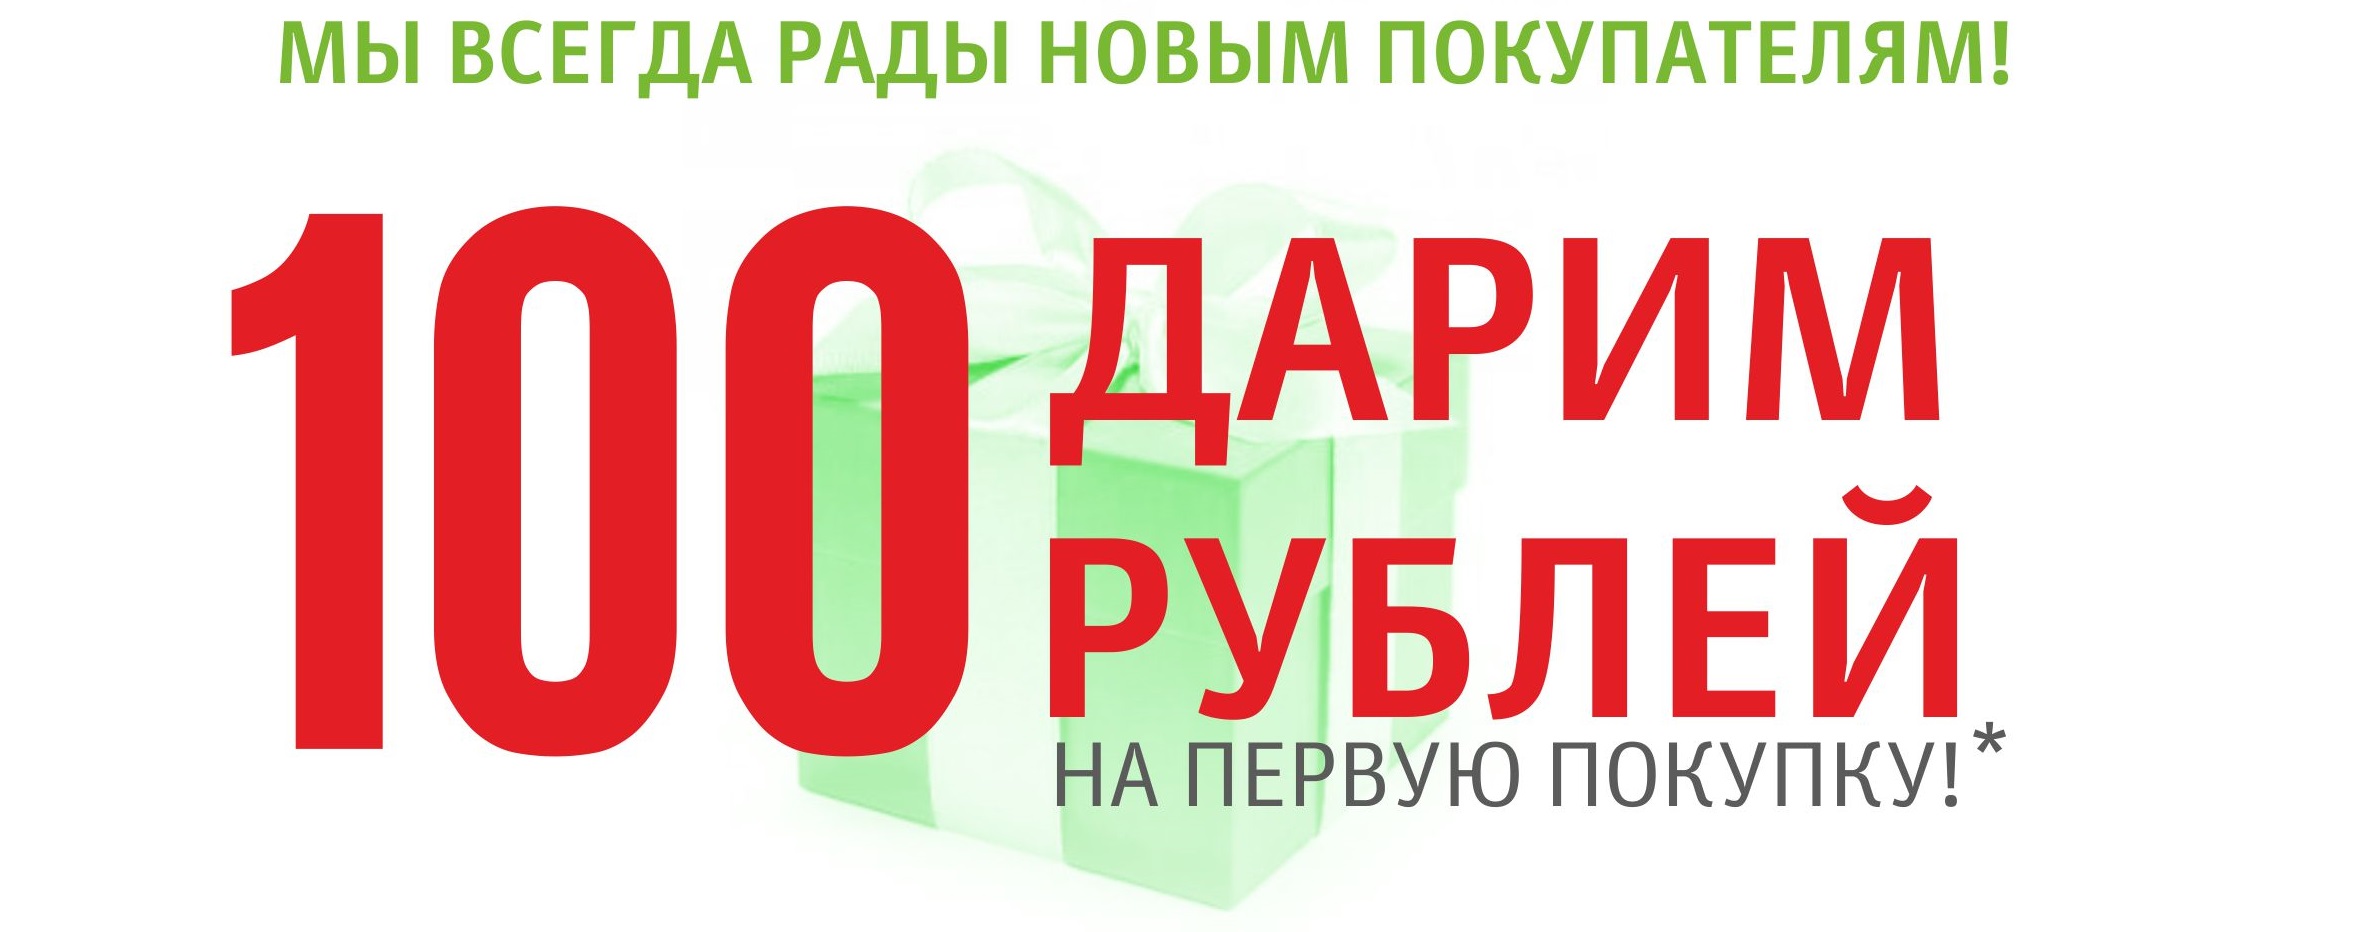 100 рублей за регистрацию